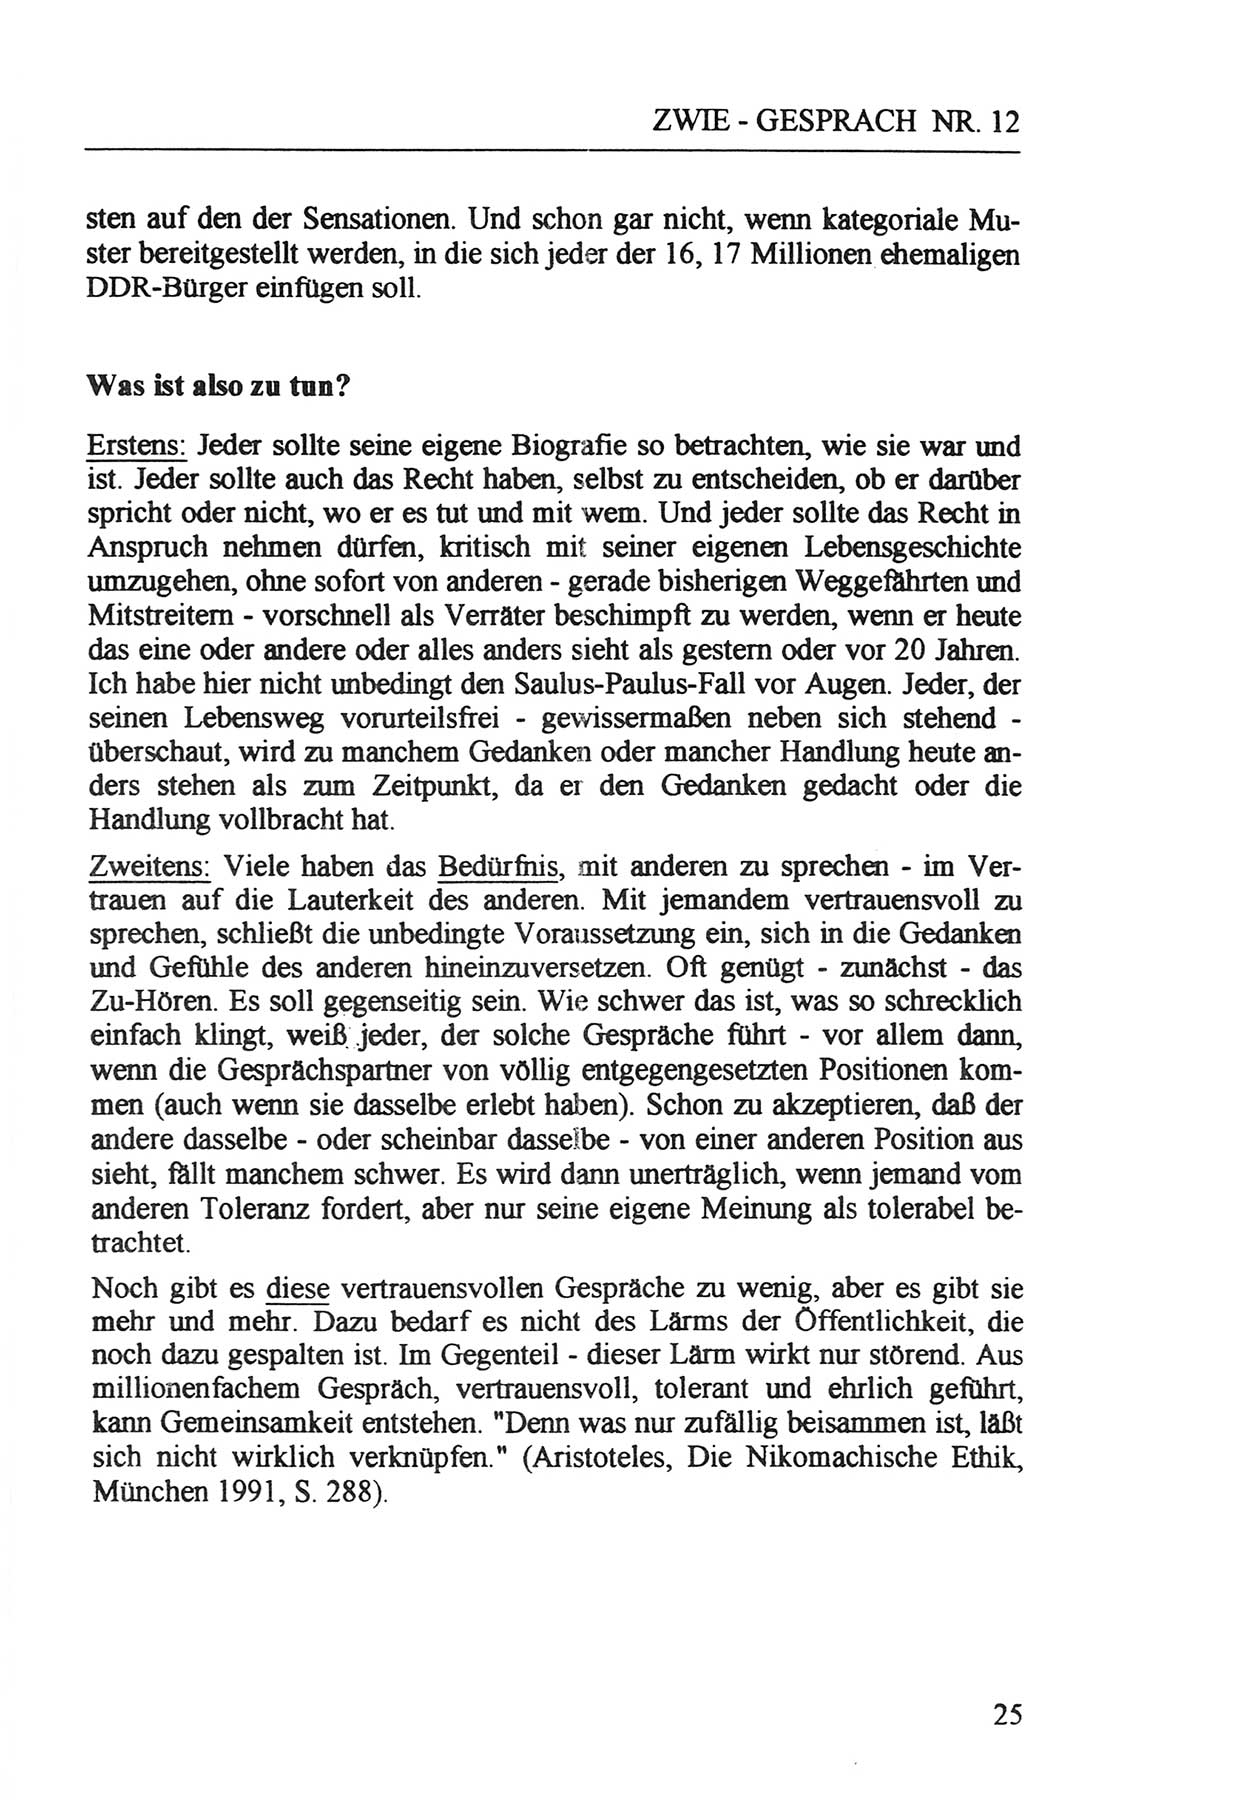 Zwie-Gespräch, Beiträge zur Aufarbeitung der Staatssicherheits-Vergangenheit [Deutsche Demokratische Republik (DDR)], Ausgabe Nr. 12, Berlin 1993, Seite 25 (Zwie-Gespr. Ausg. 12 1993, S. 25)